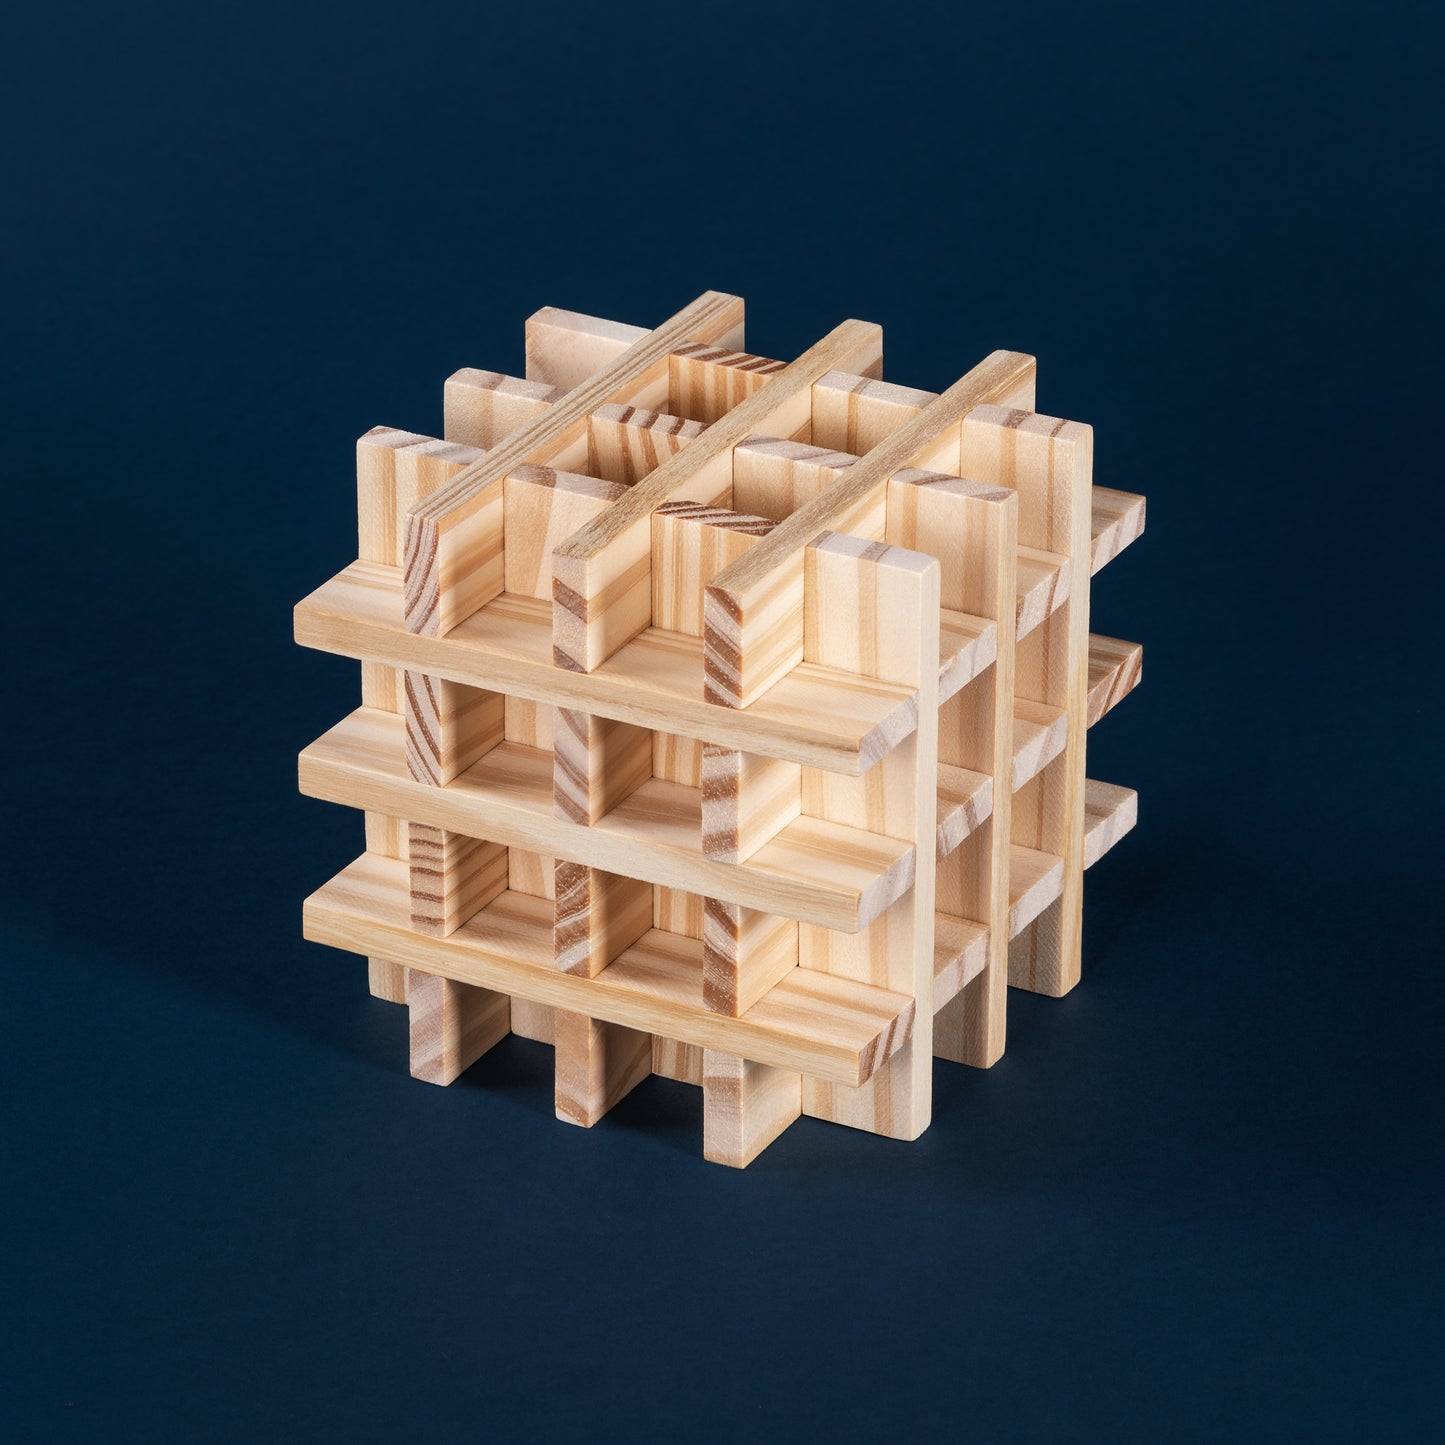 Komplexe dreidimensionale Struktur aus Holzklötzen auf dunkelblauem Hintergrund